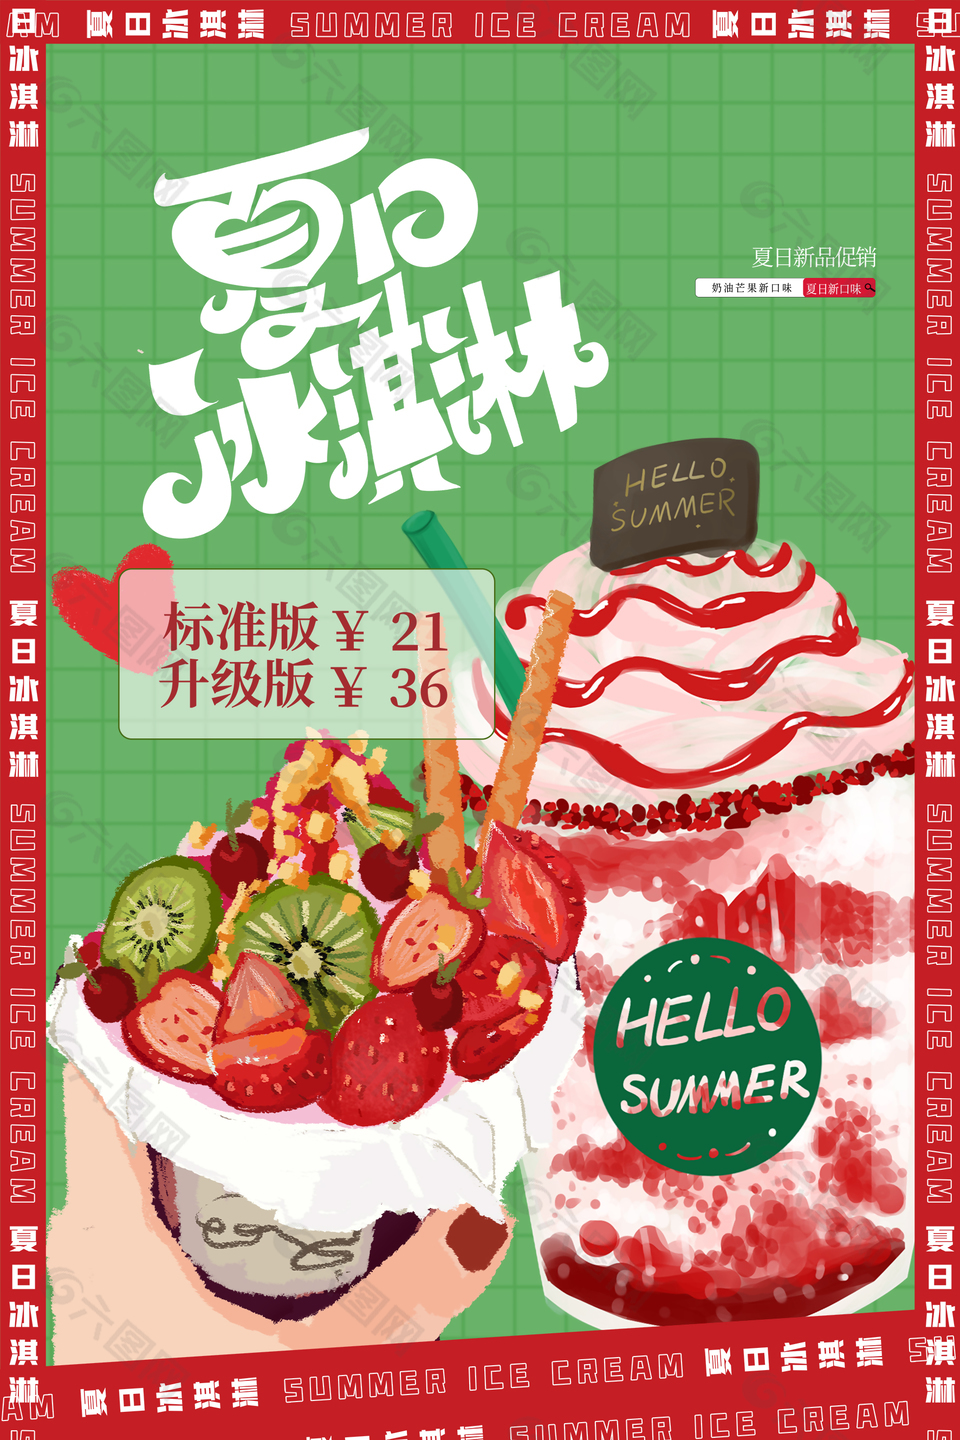 夏日冰淇淋美食宣传海报